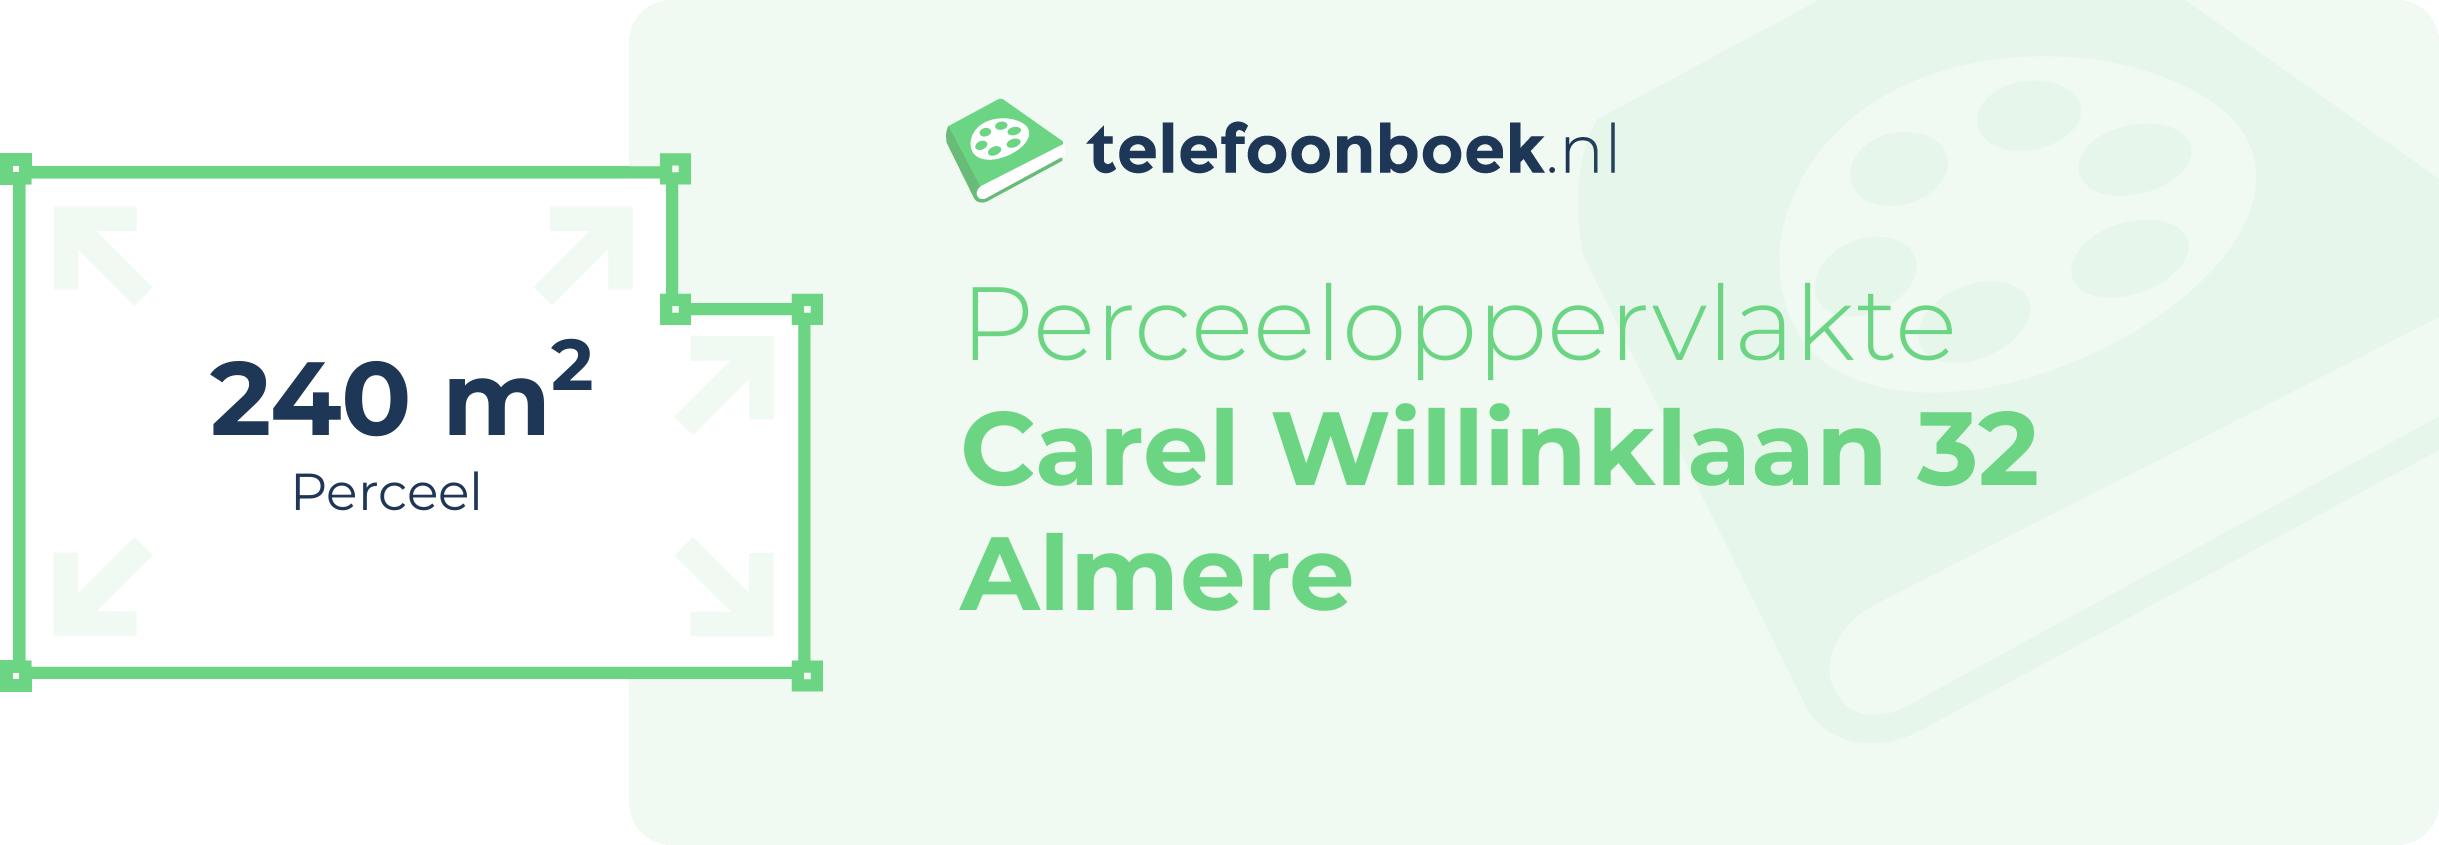 Perceeloppervlakte Carel Willinklaan 32 Almere